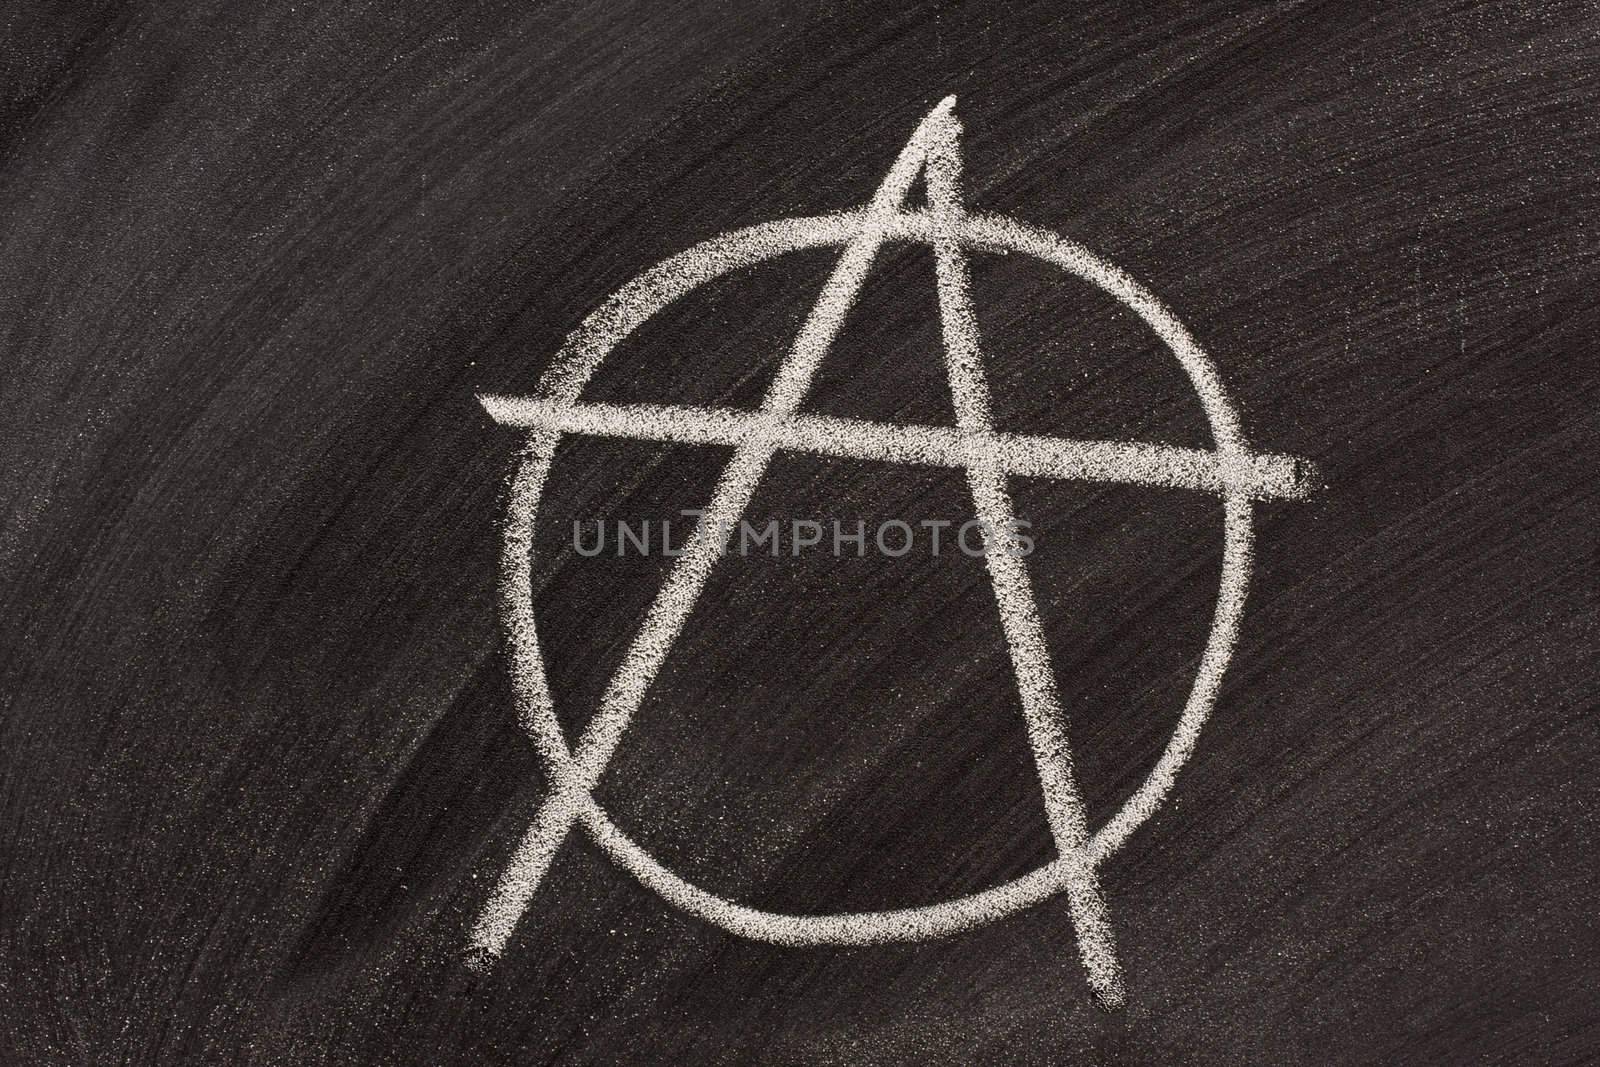 anarchy symbol on a blackboard by PixelsAway